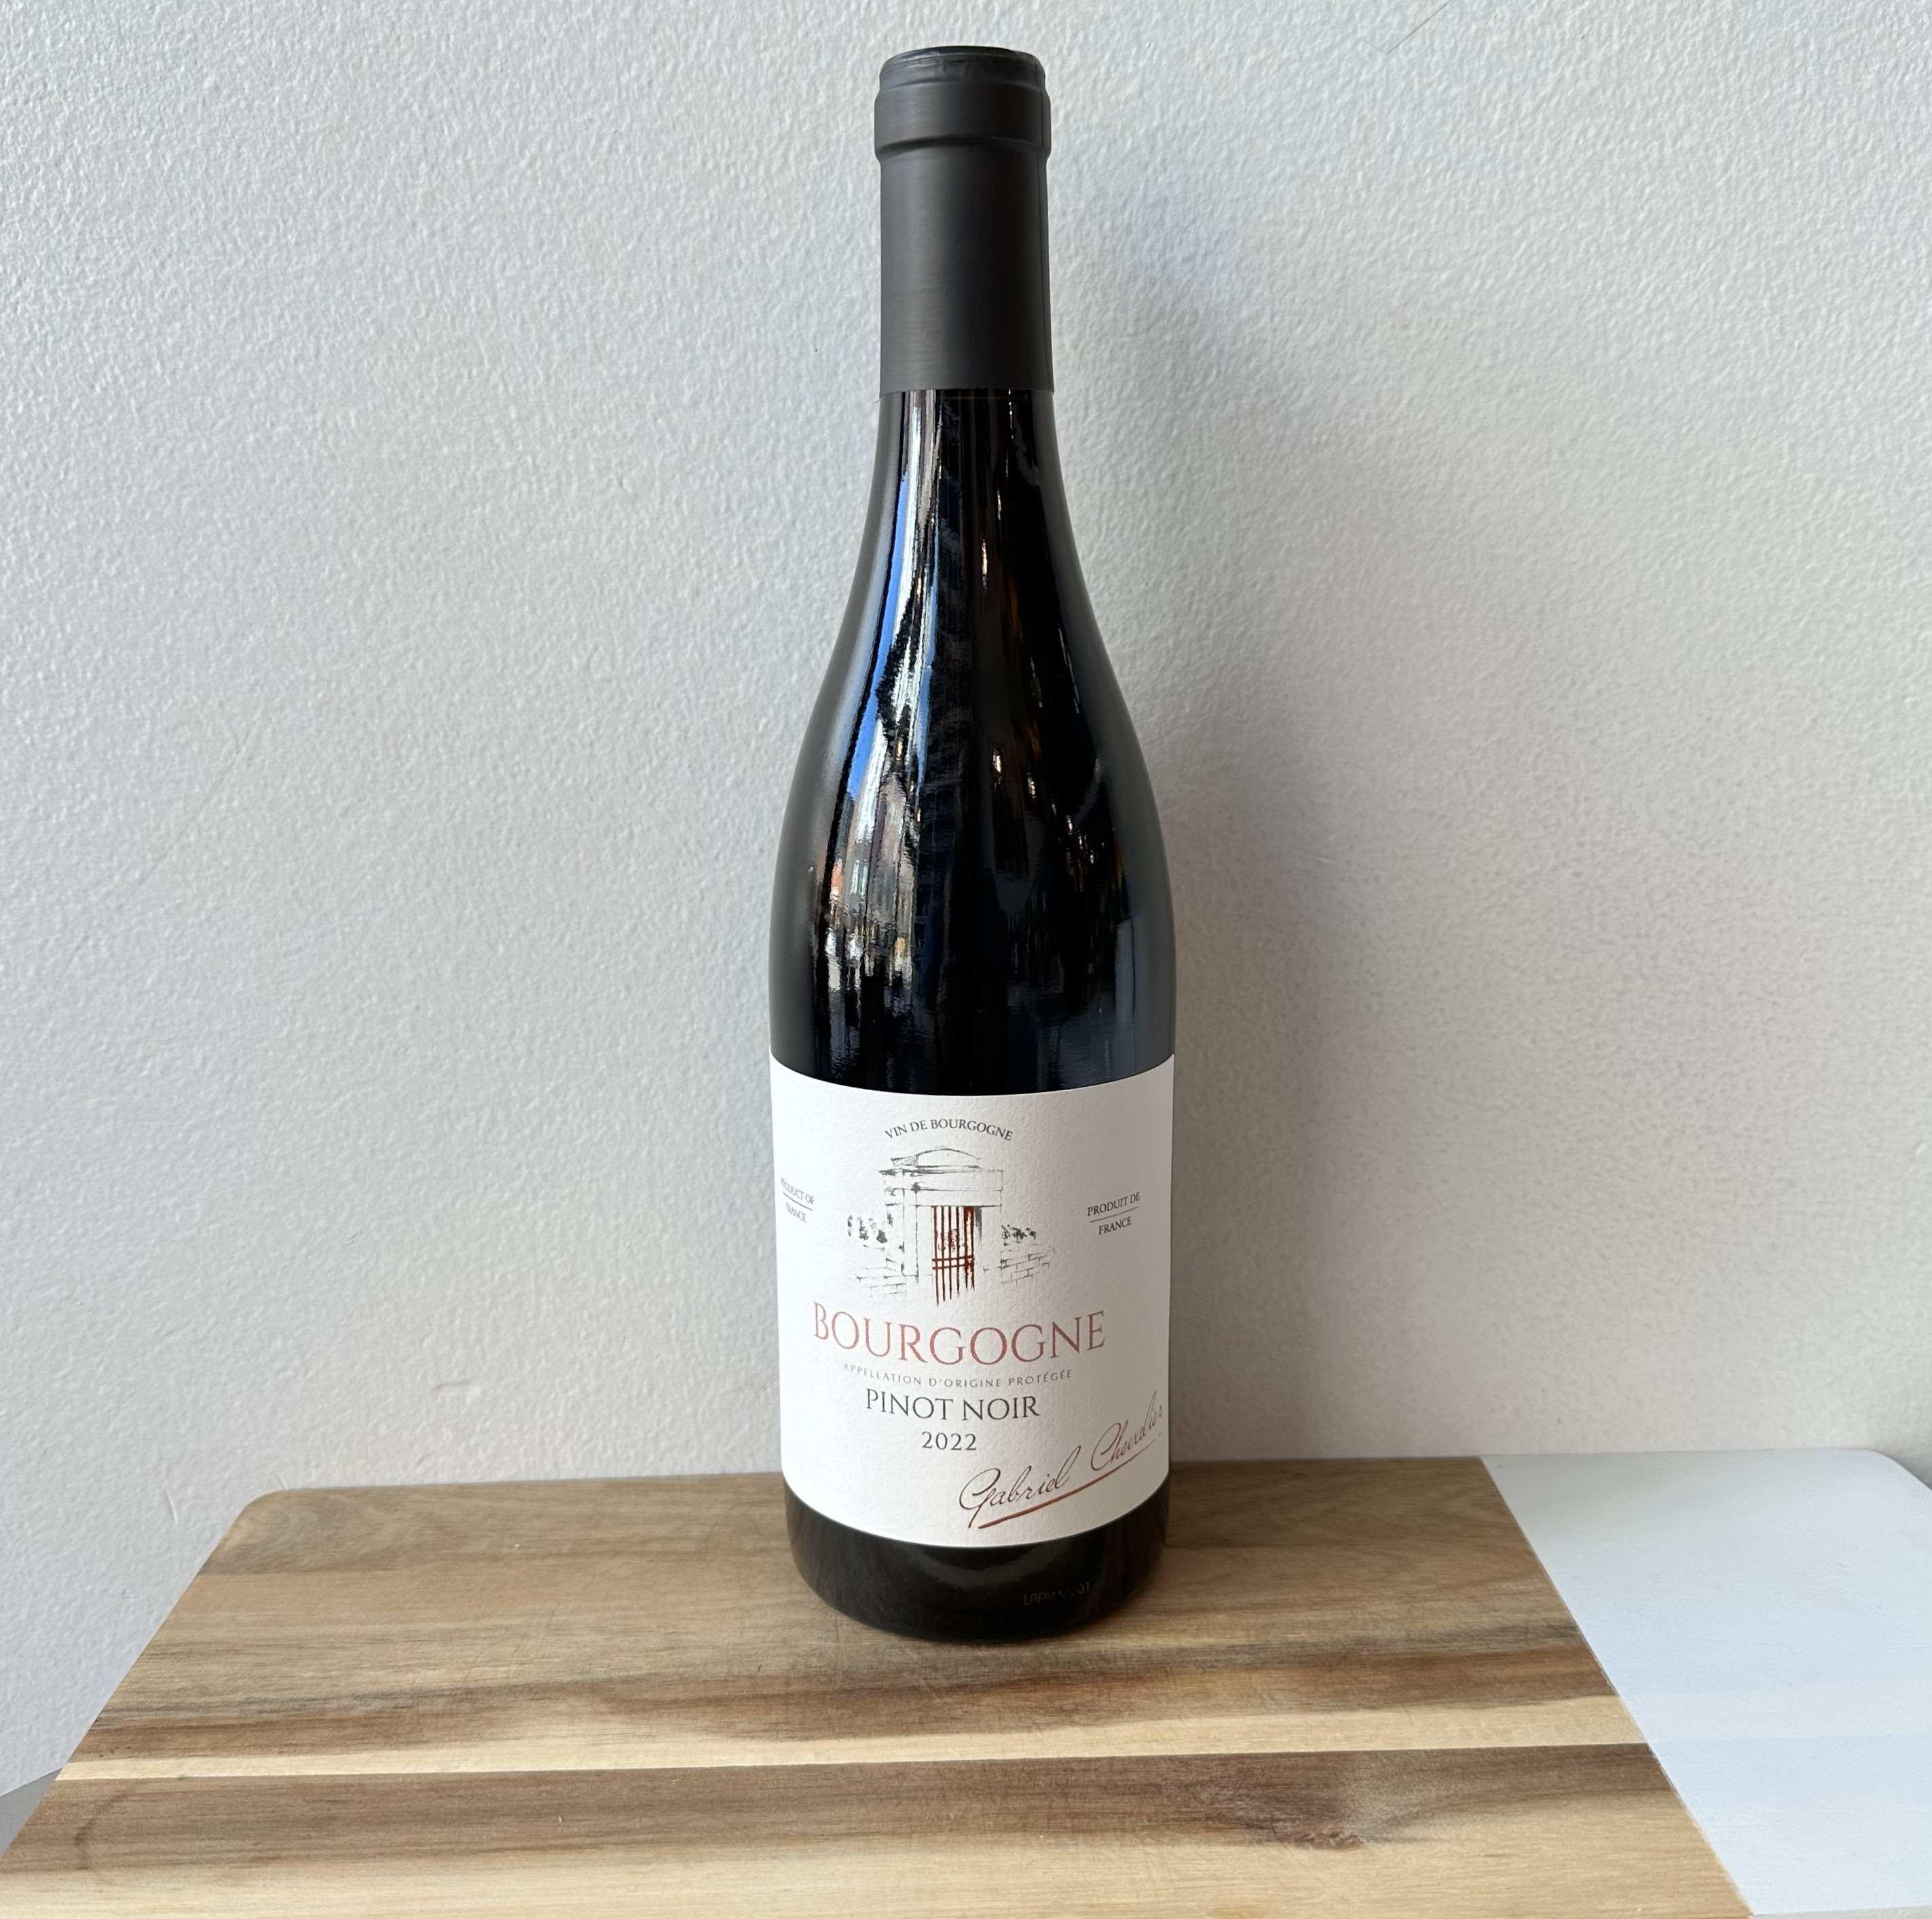 Gabriel Chevalier Bourgogne Pinot Noir 2022 France